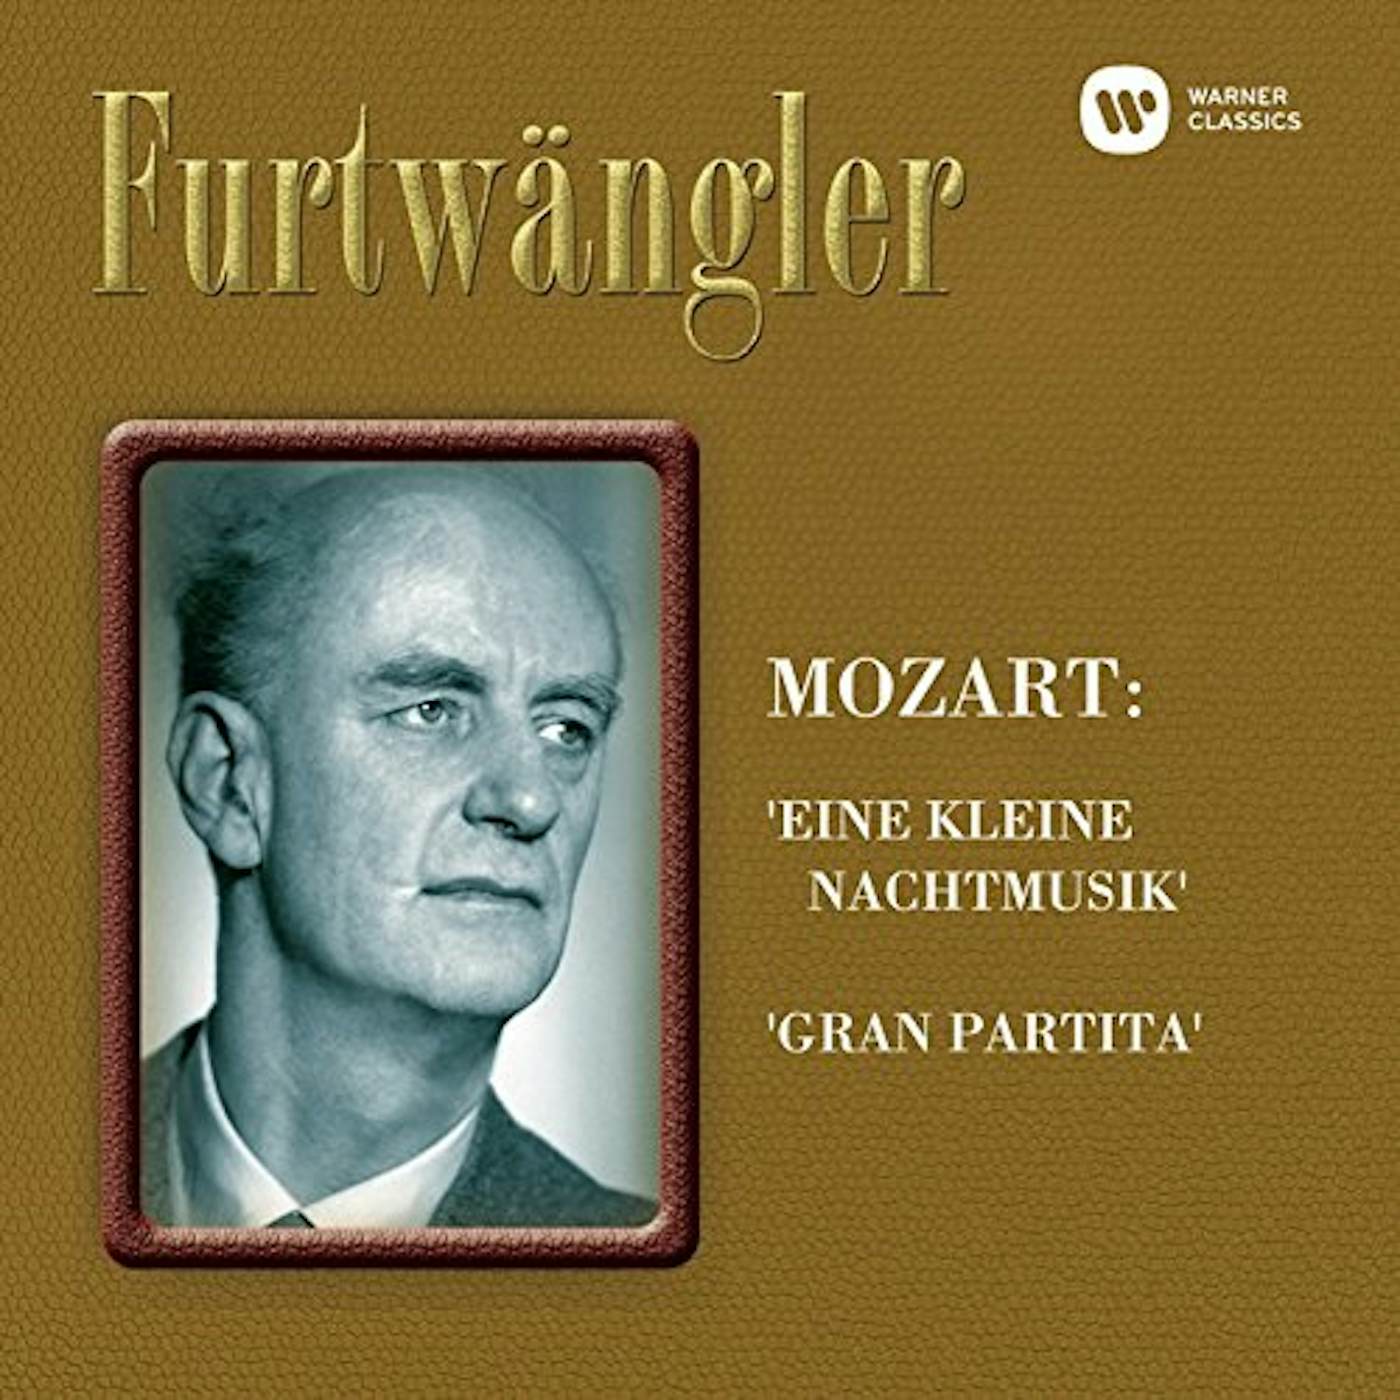 Wilhelm Furtwängler MOZART: 'EINE KLEINE NACHTMUSIK' 'GR Super Audio CD